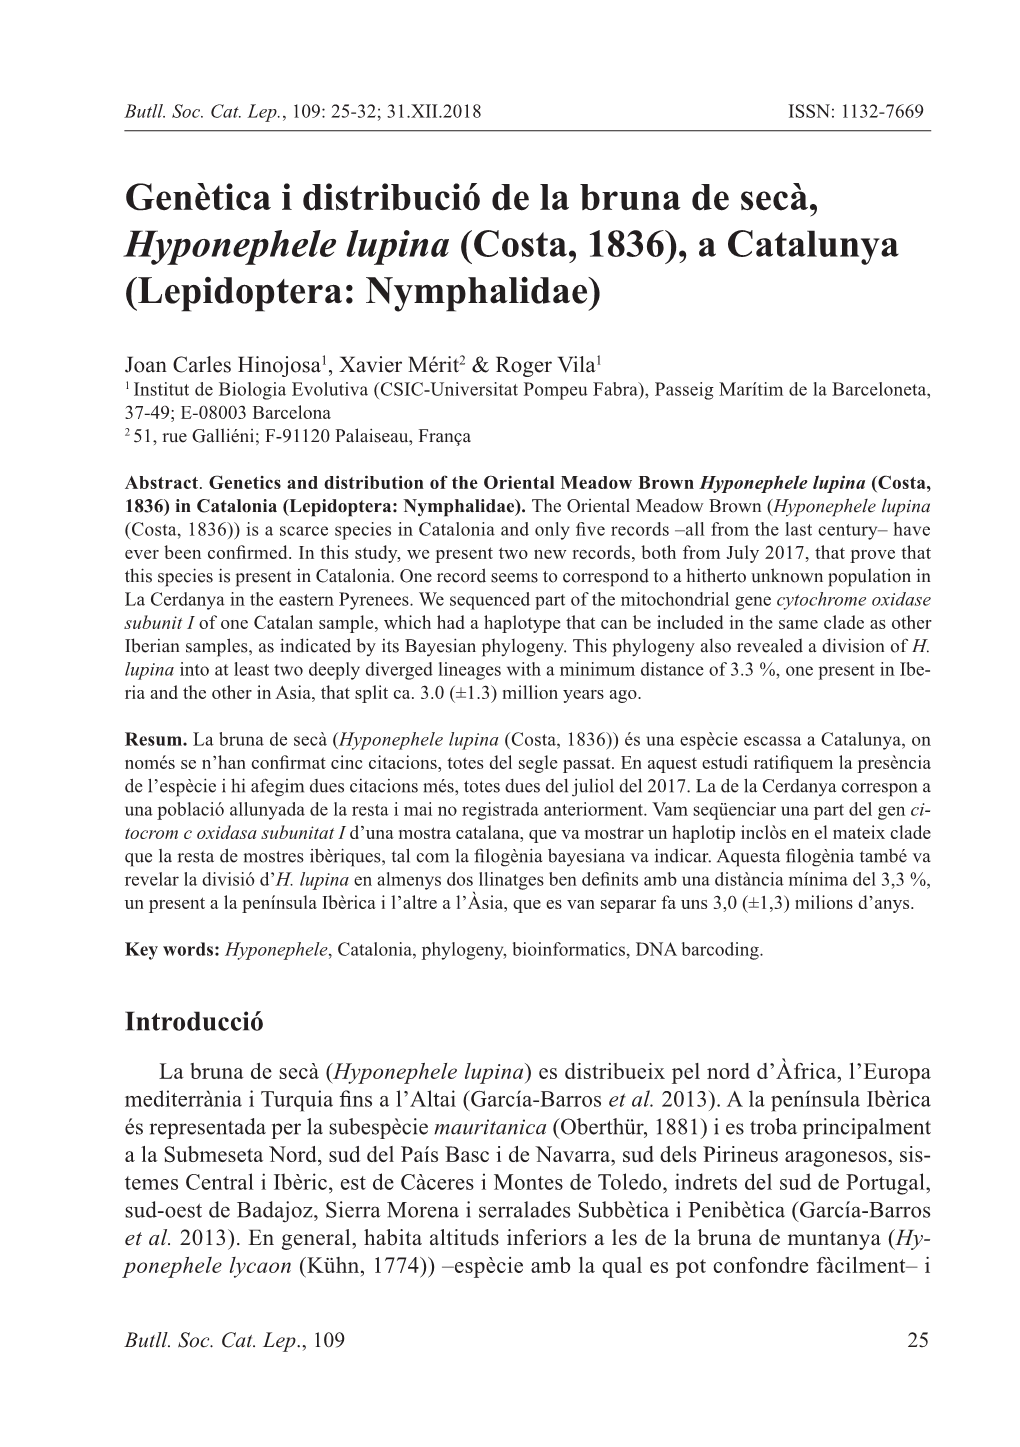 Genètica I Distribució De La Bruna De Secà, Hyponephele Lupina (Costa, 1836), a Catalunya (Lepidoptera: Nymphalidae)